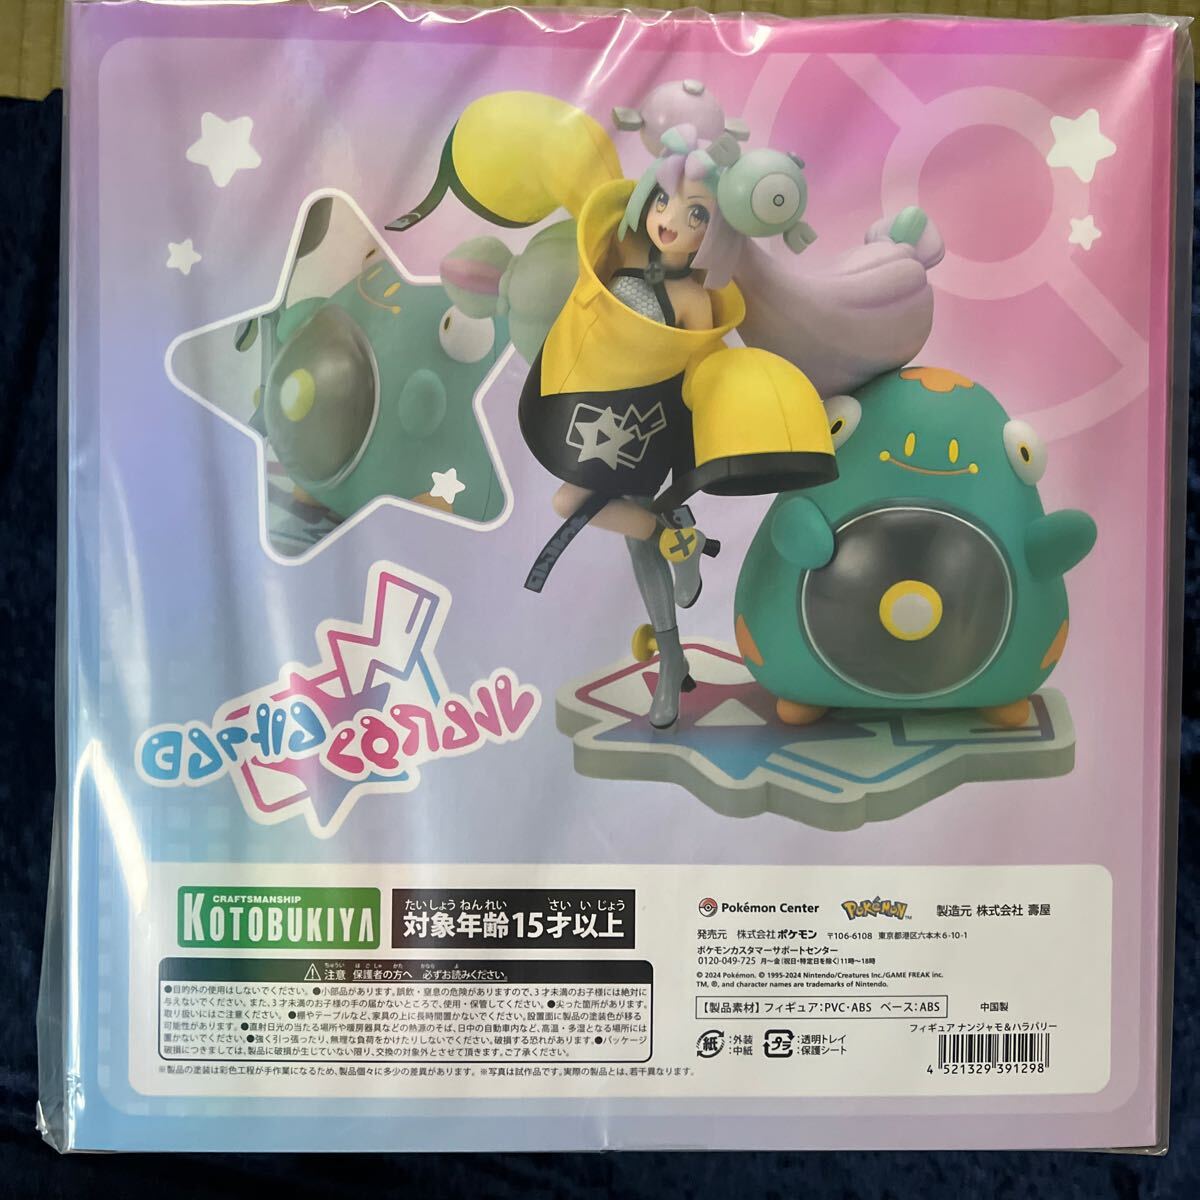  новый товар нераспечатанный фигурка наан jamo& - la Bally / Pokemon центральный оригинал бесплатная доставка 